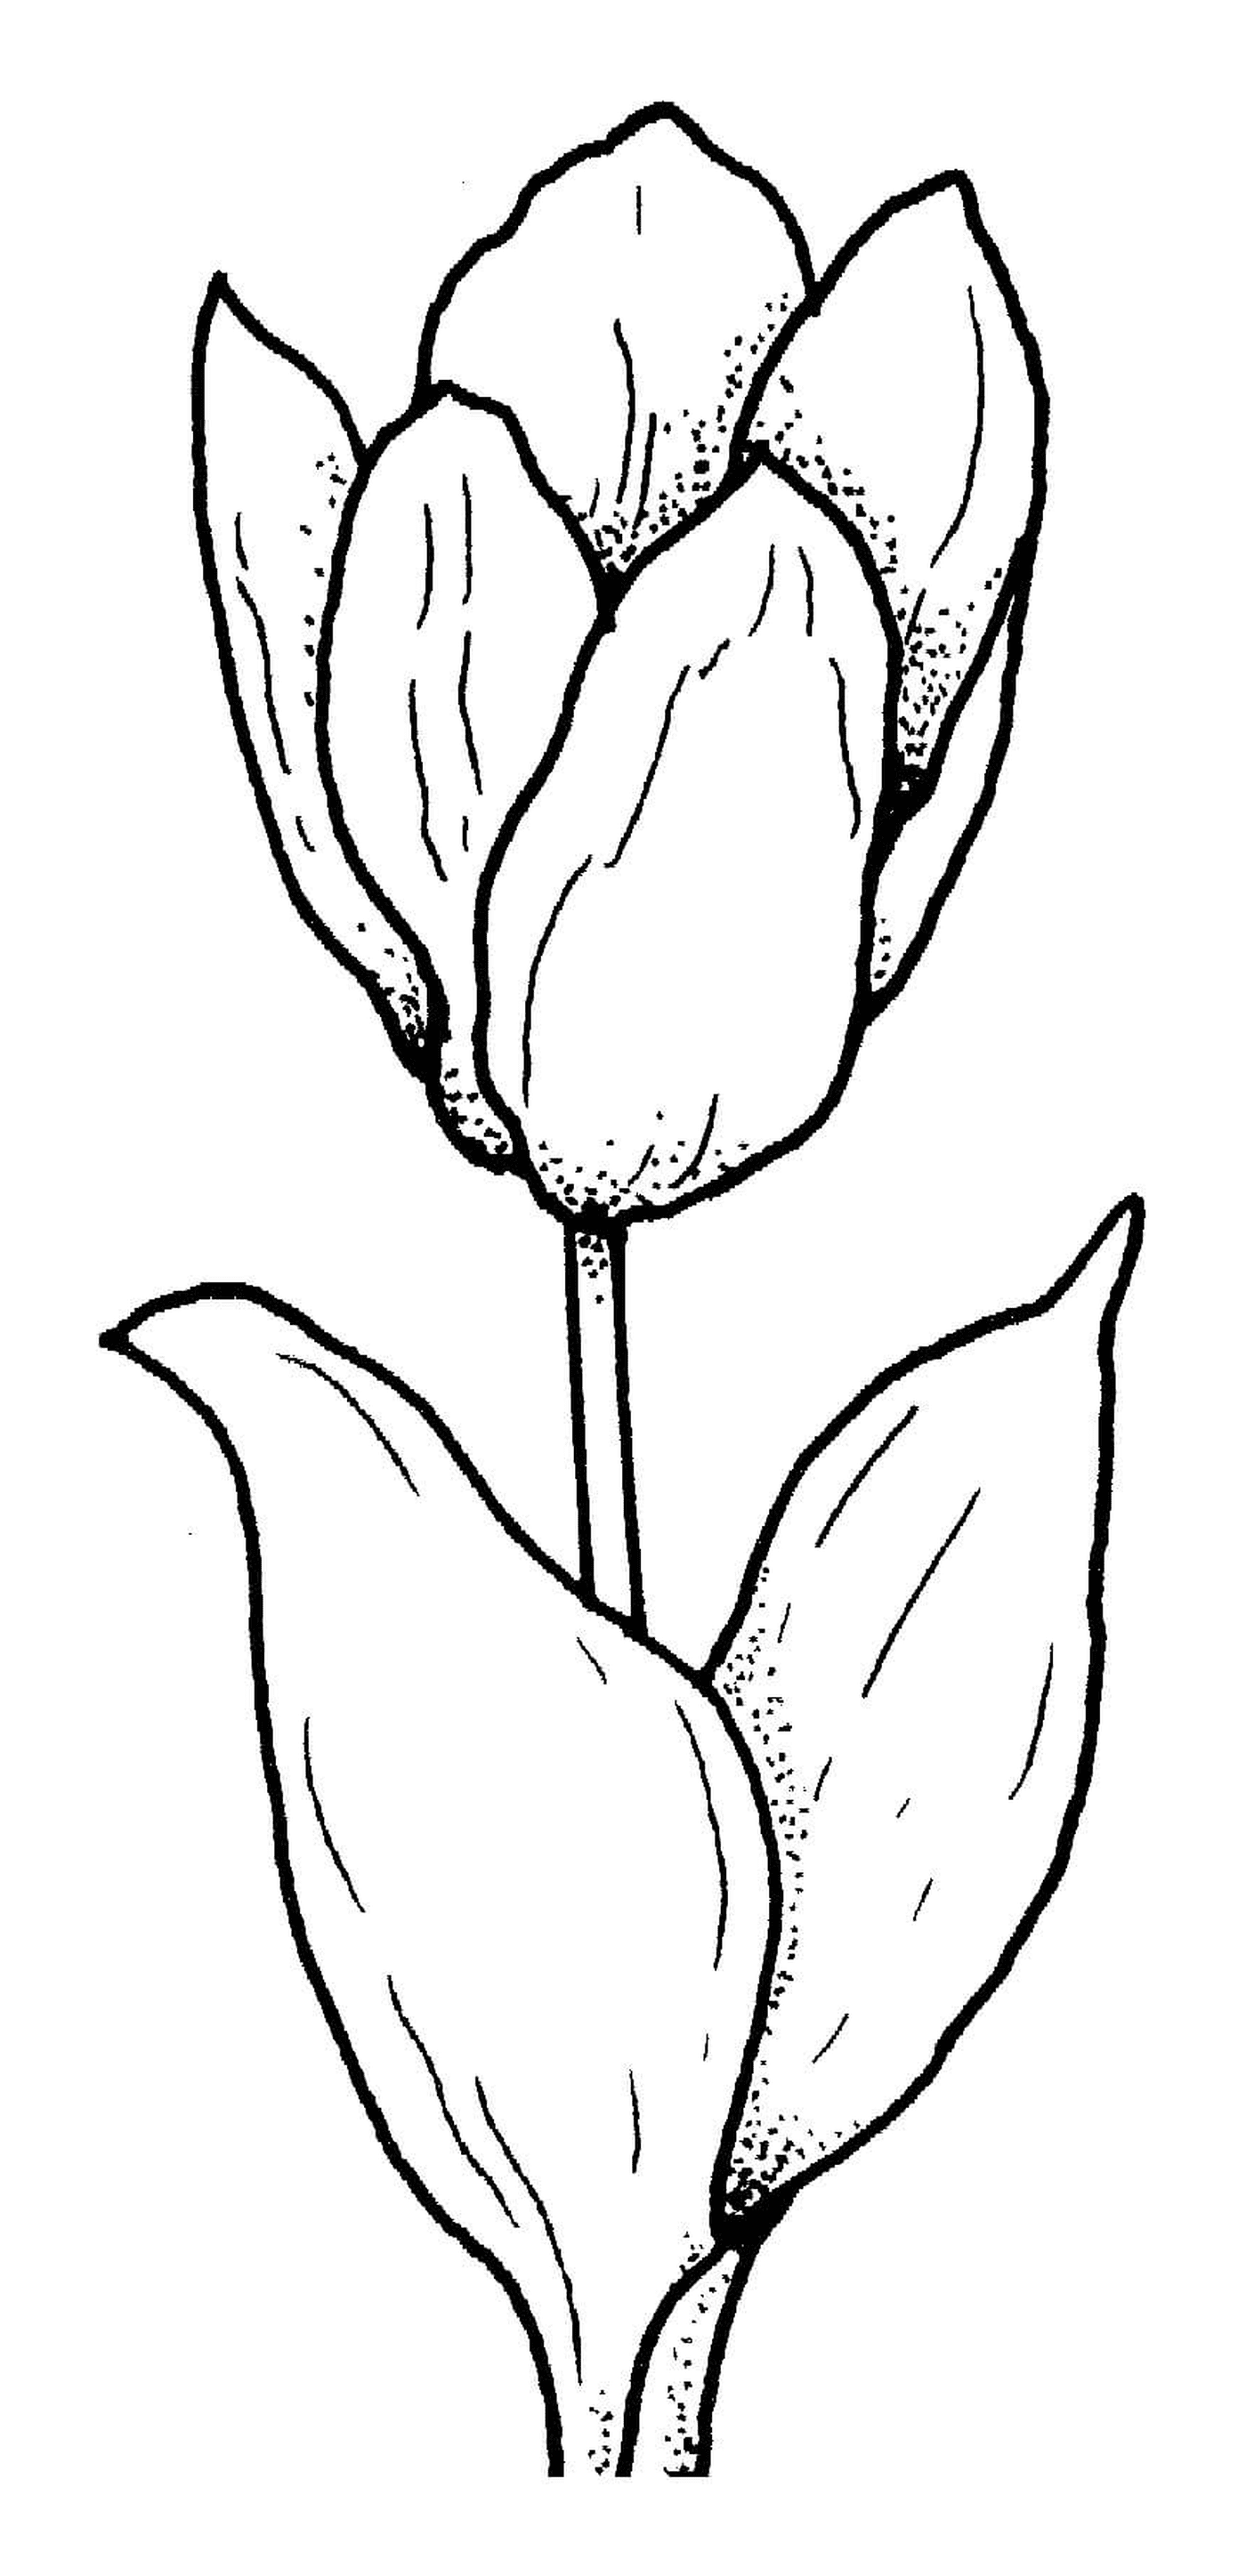  Оригинальный цветок тюльпана 